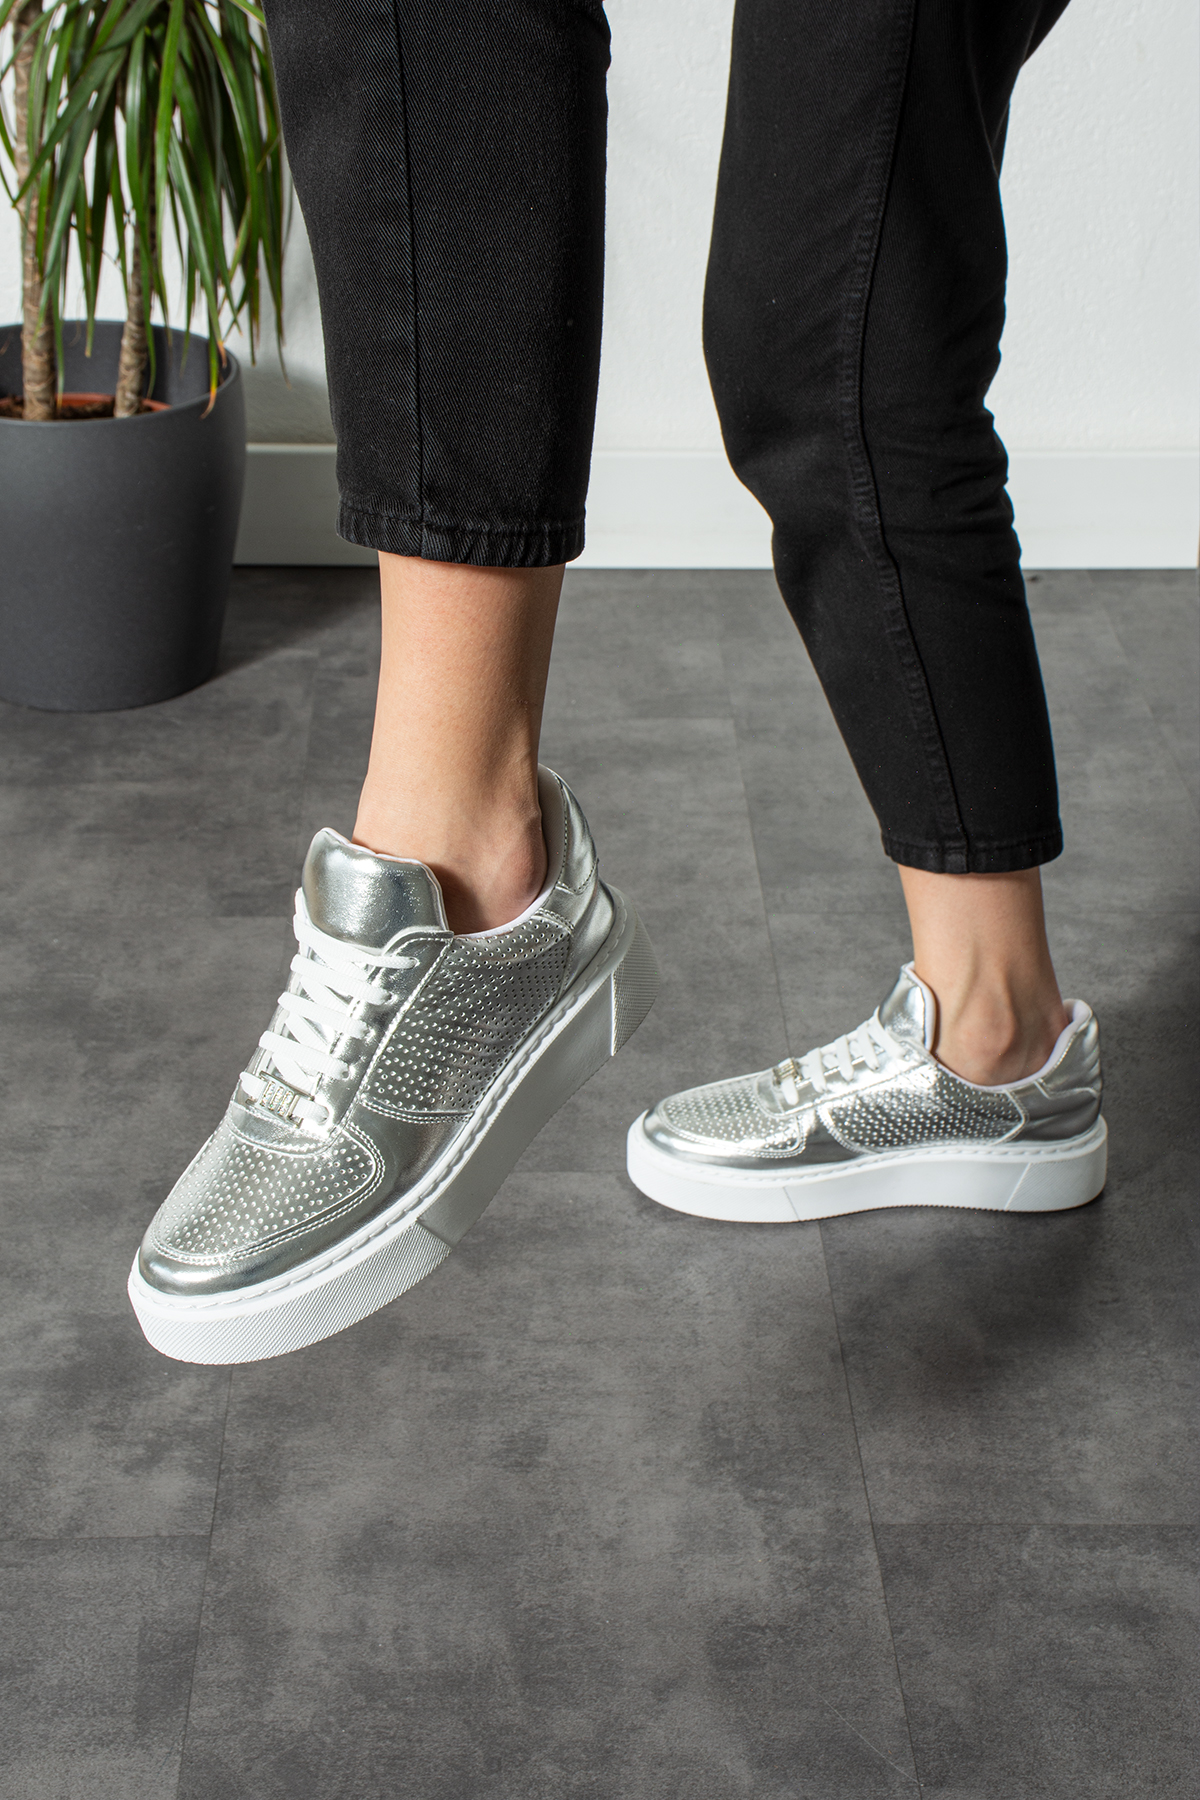 Metalik Gümüş Dikişli Taban Taş Detay Bağcıklı Günlük Ortapedik İç Taban Kadın Sneaker